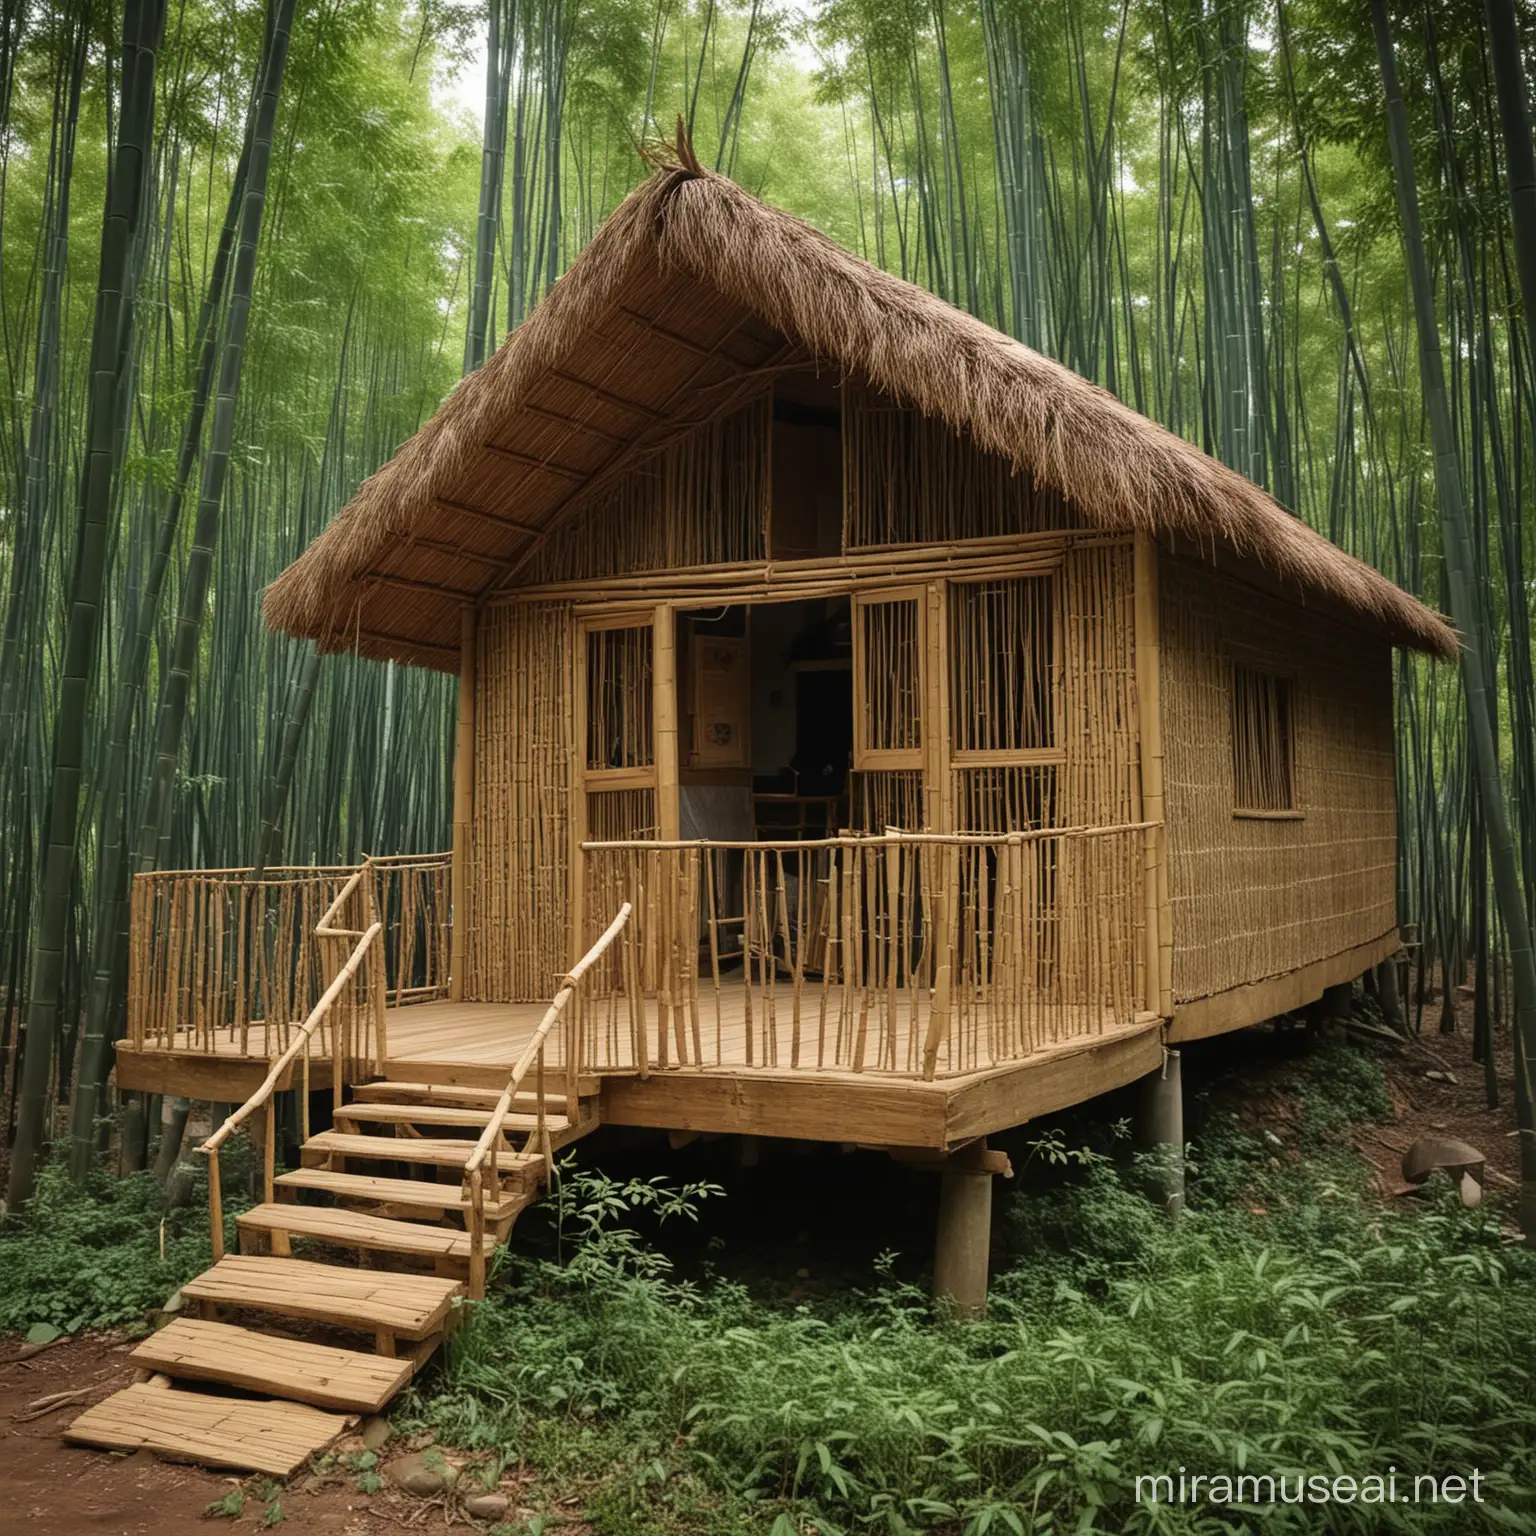 rumah buluh di dalam hutan menyambut syawal

